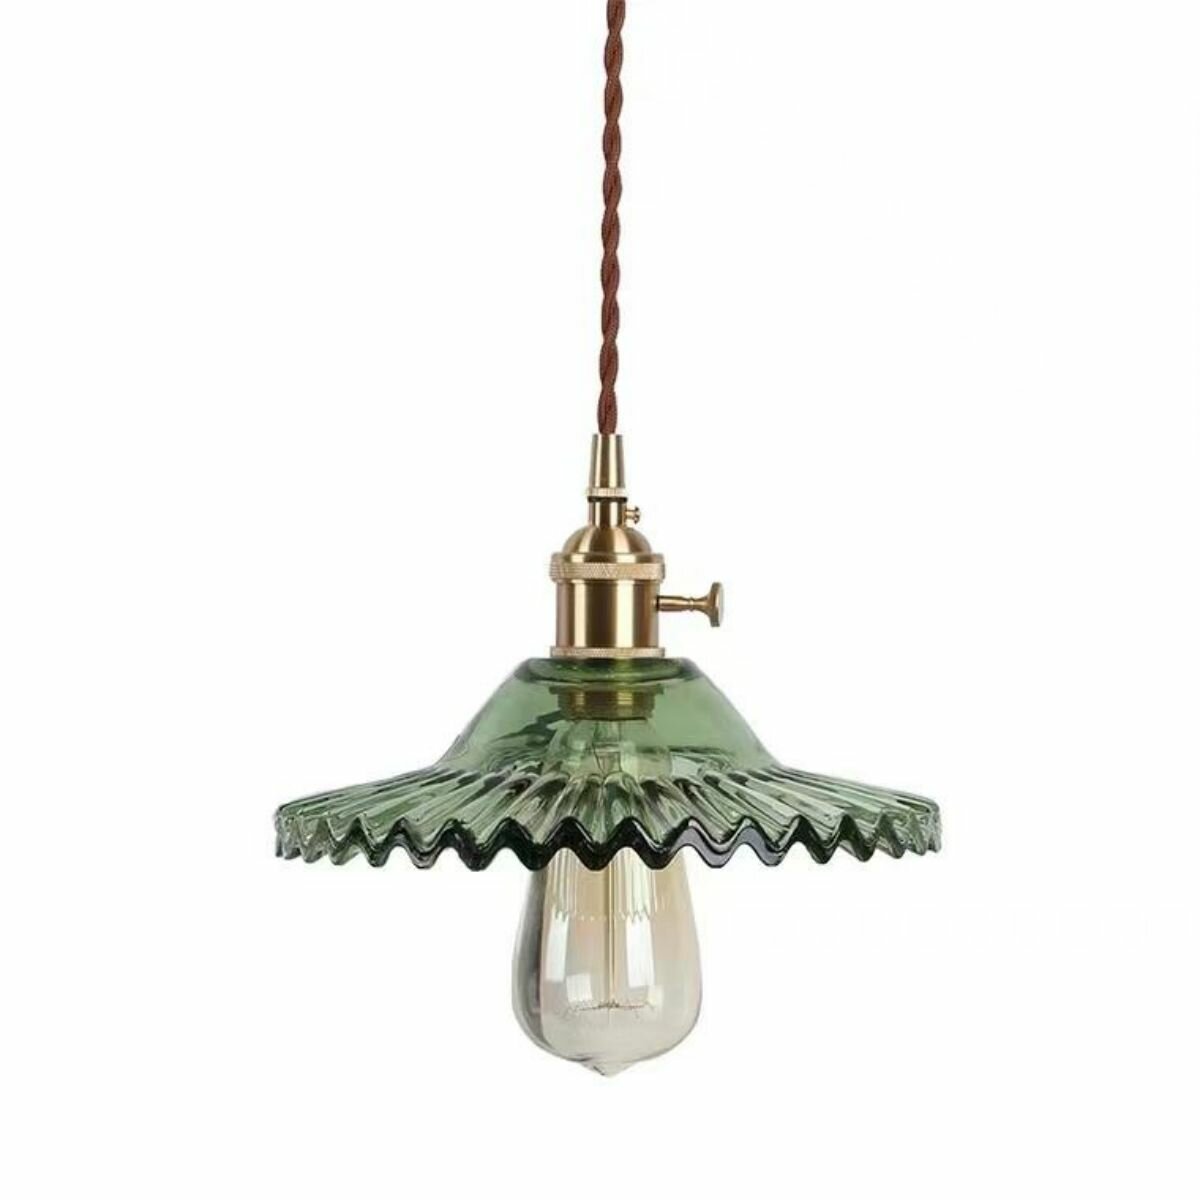 Подвесной светильник, Osairous,659157, стеклянный подвесной светильник в стиле лофт, зеленый, головка E27, источник света в комплект не входит, 5-10 м²